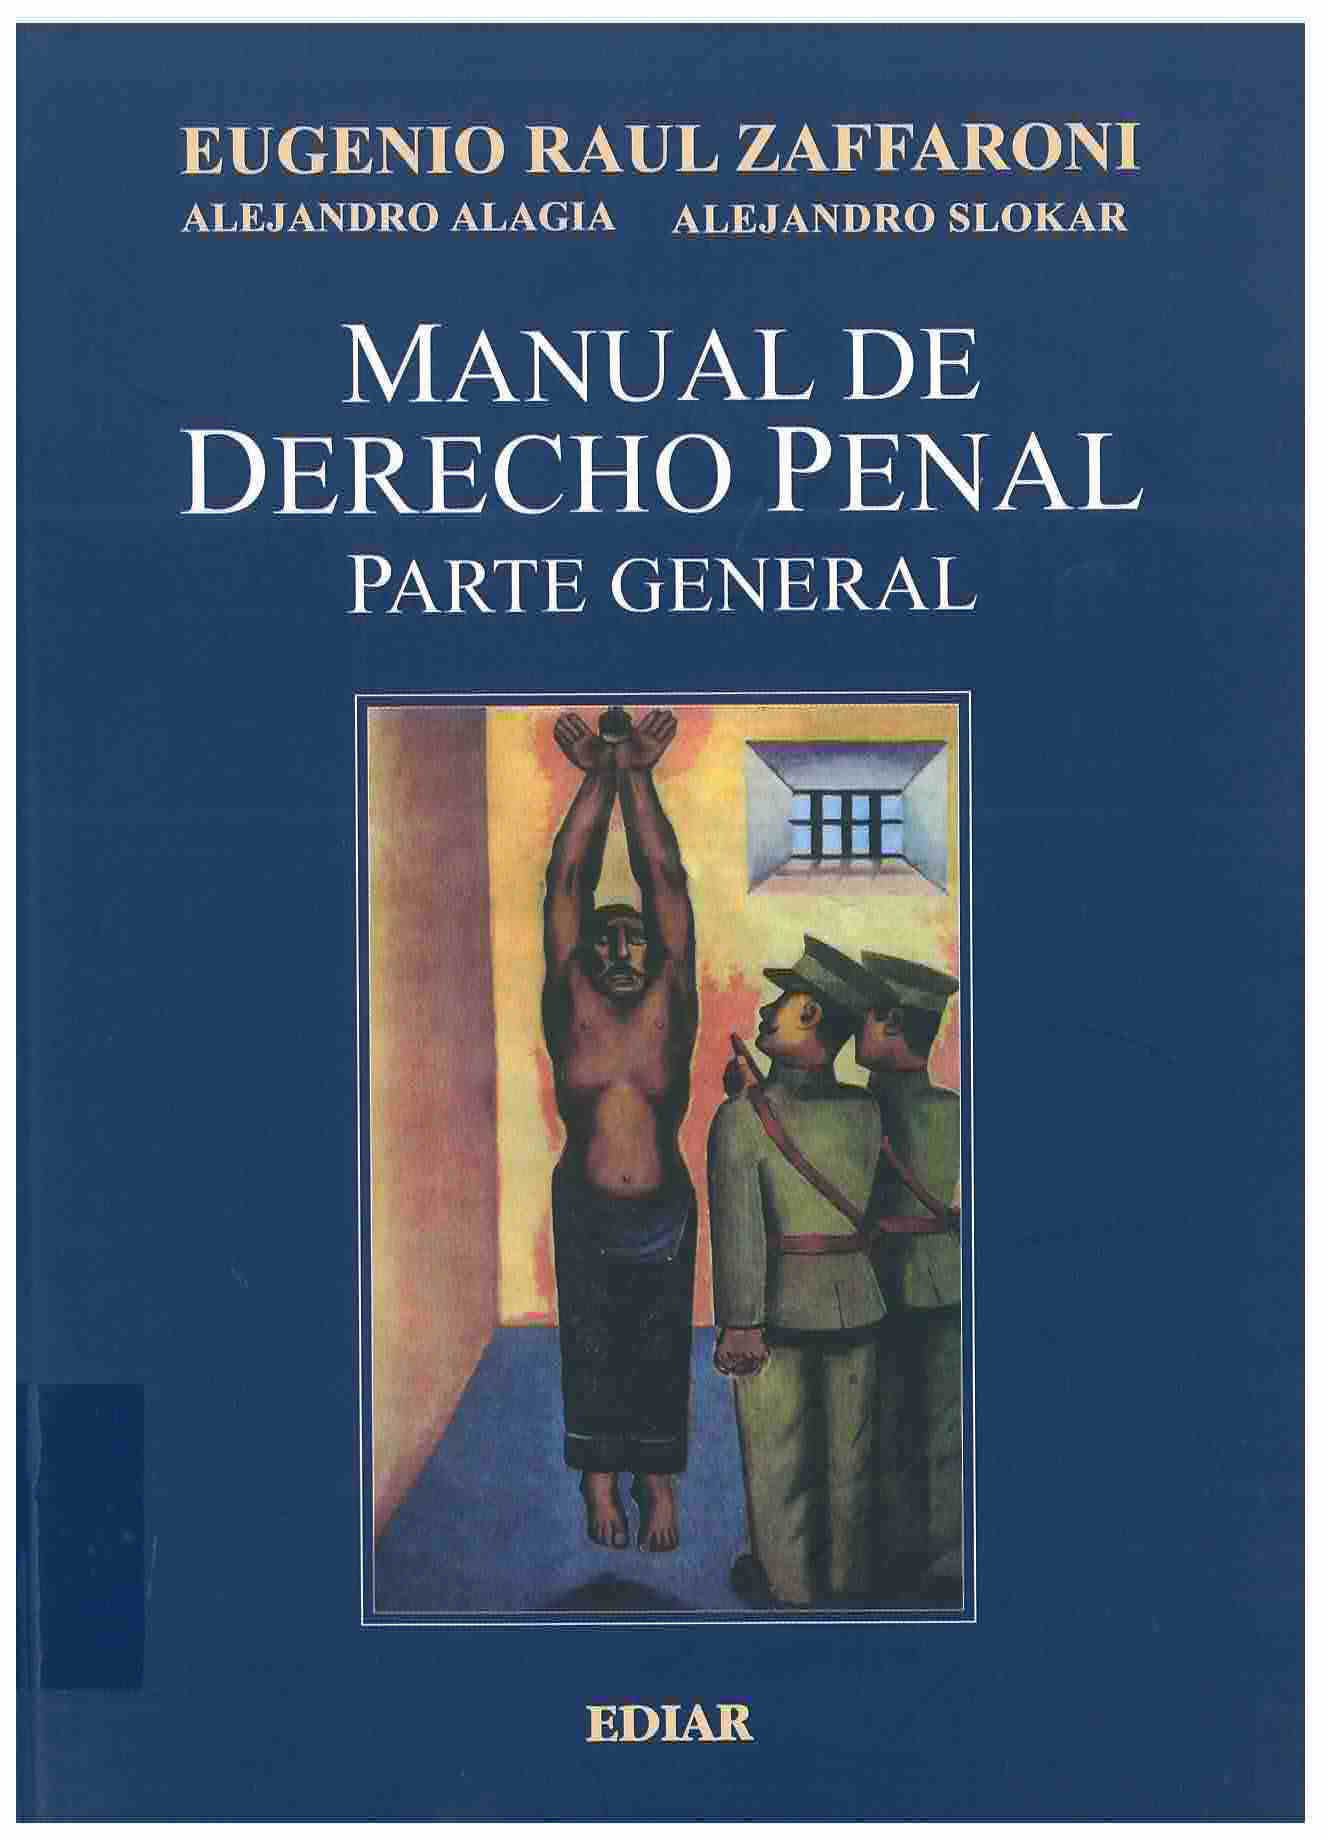 Manual de derecho penal parte general